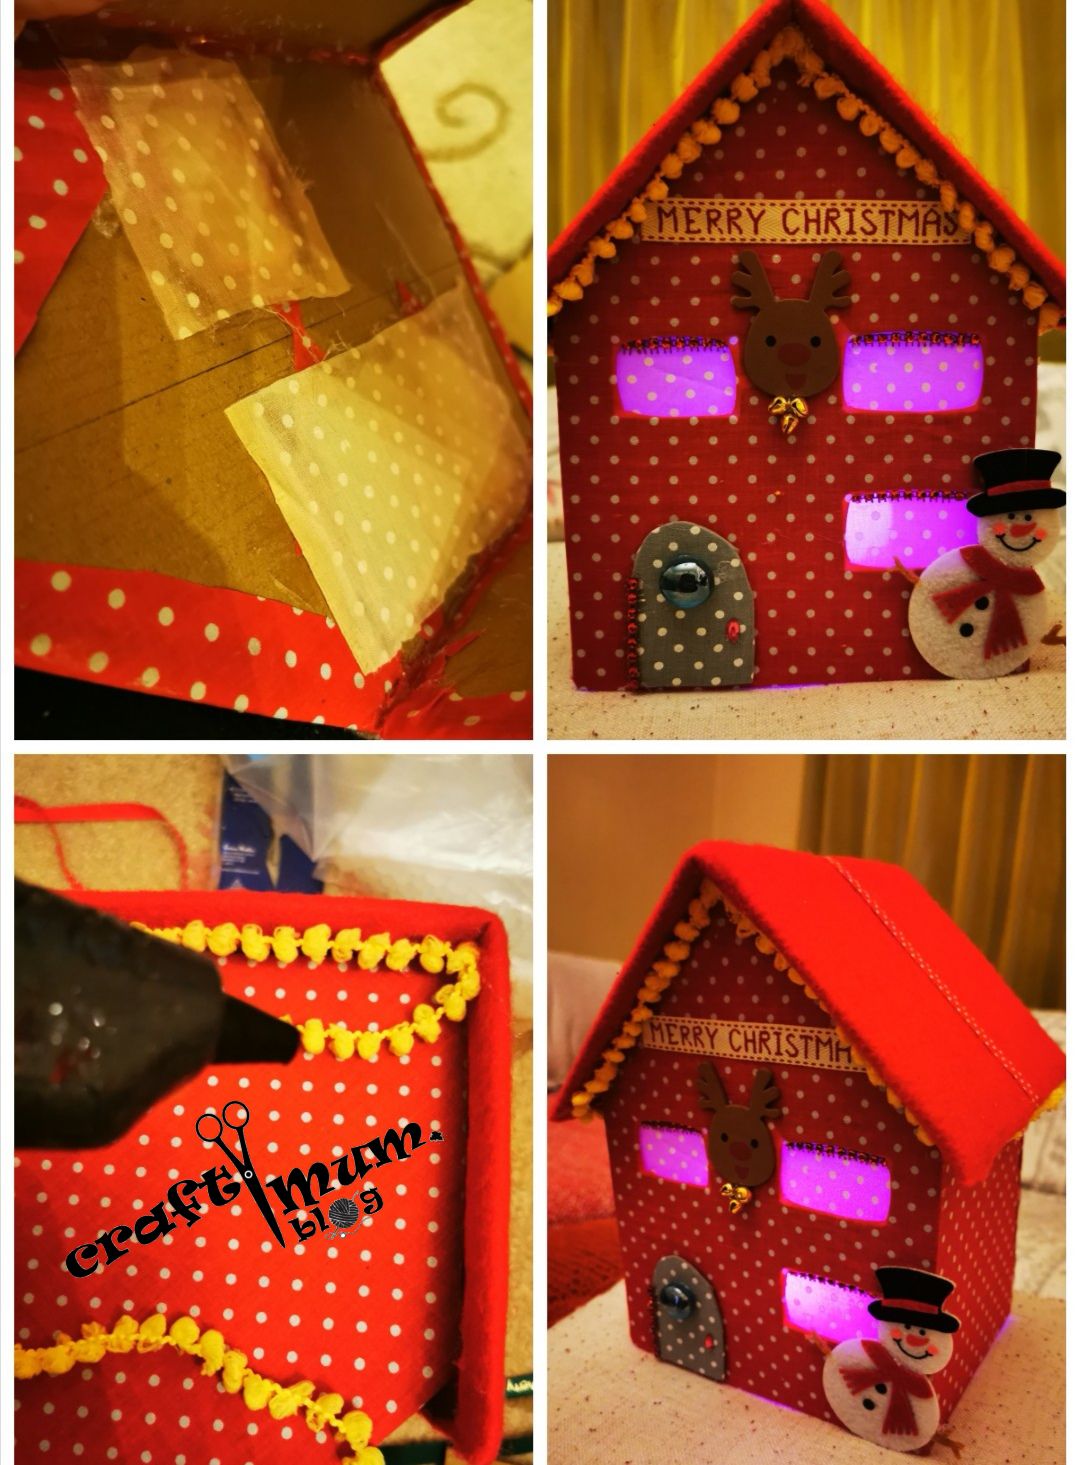 Cardboard & fabric houses